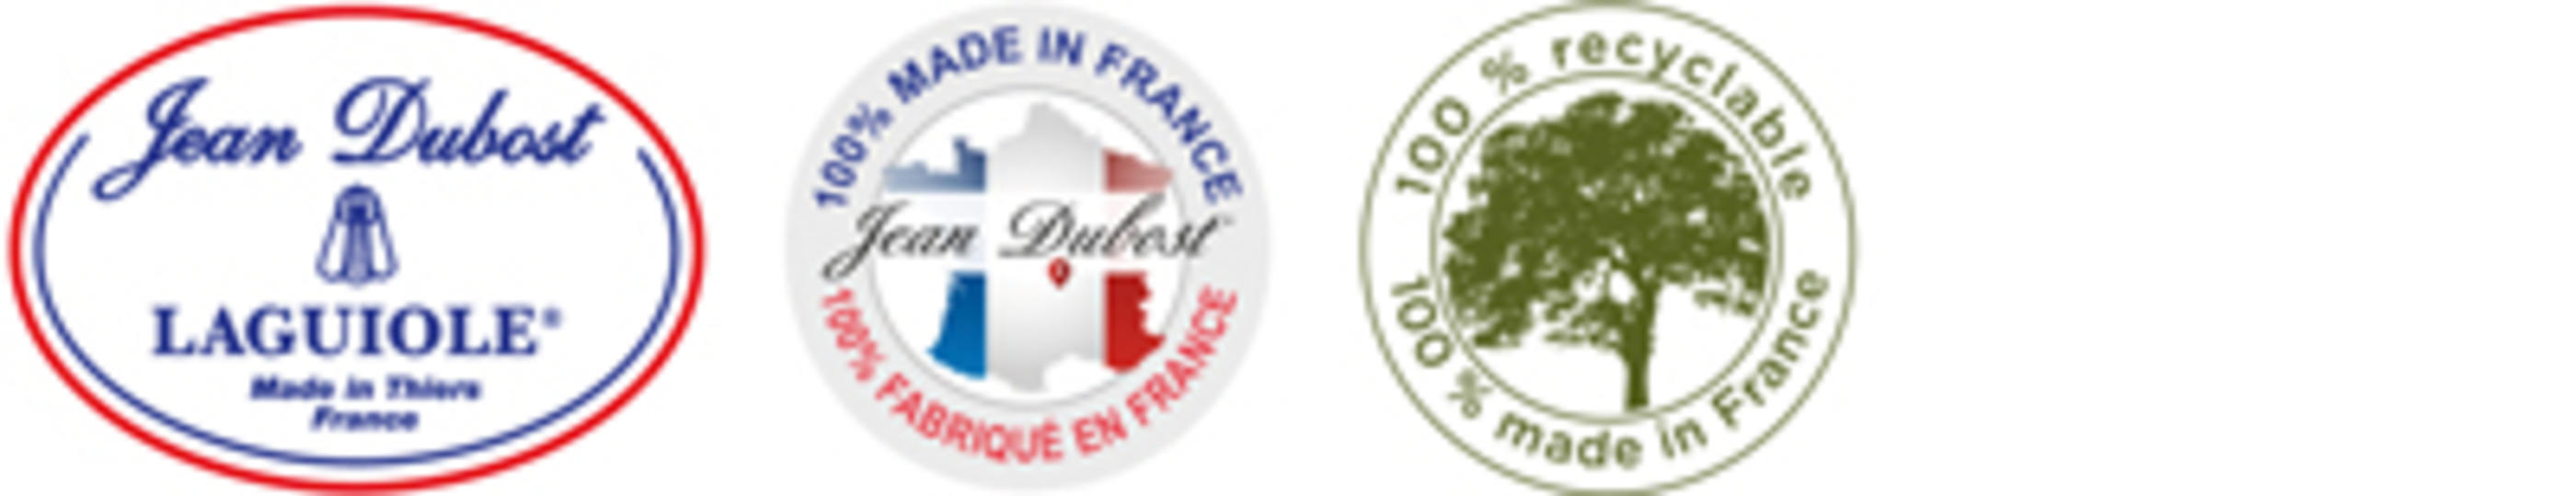 logo Jean Dubost JDL-CF-AER-400x77px